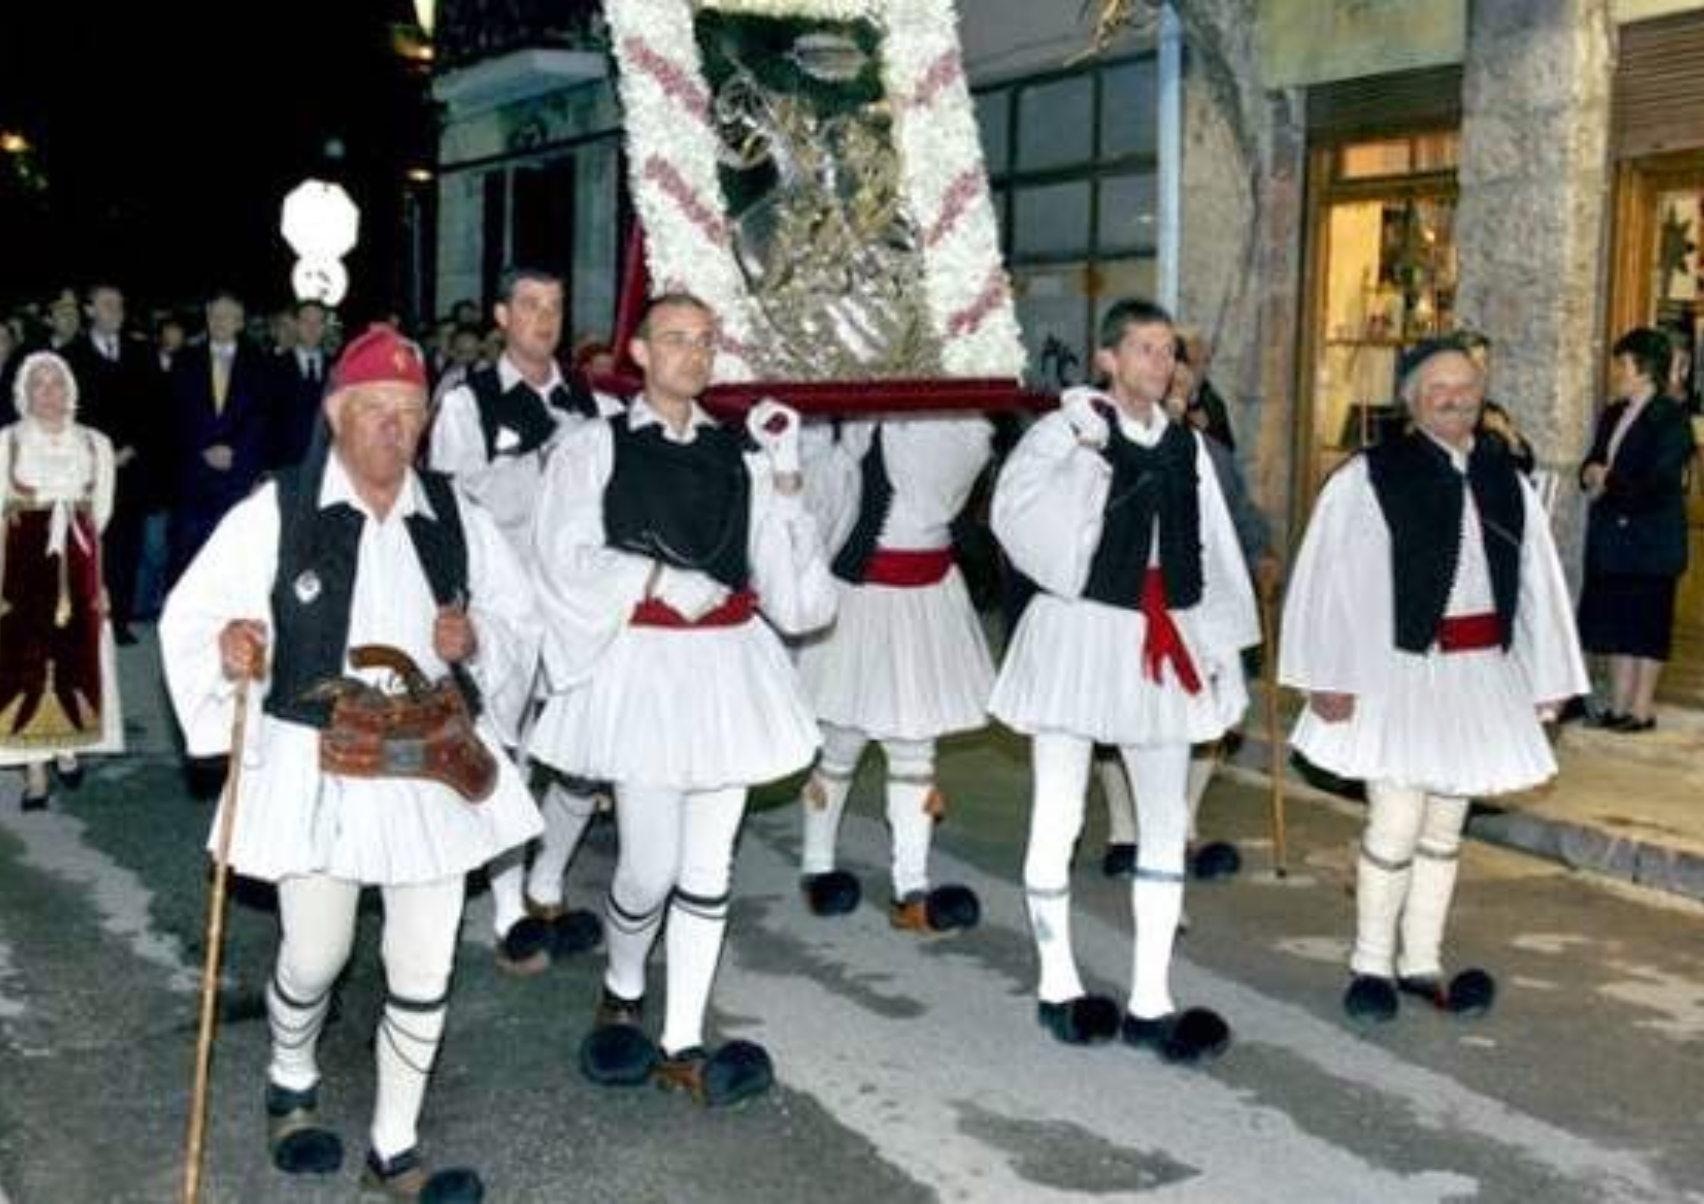 Τα έθιμα της γιορτής του Αγίου Γεωργίου ανά την  Ελλάδα